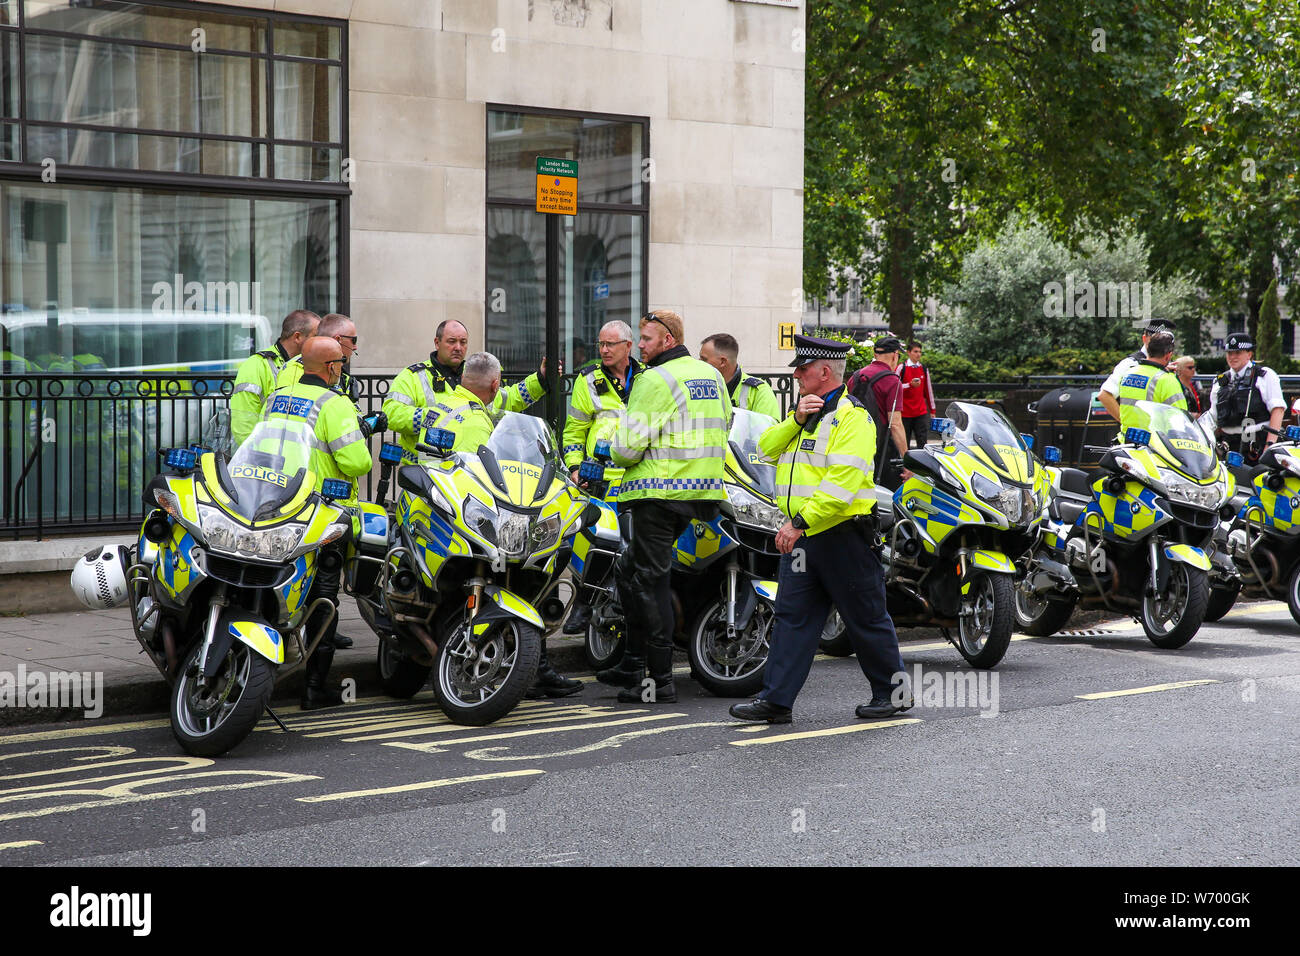 Funzionari di polizia sulla moto sono visto durante la dimostrazione.un rally a sostegno del britannico di estrema destra Yaxley-Lennon Stephen, noto anche come Tommy Robinson nel centro di Londra. Tommy Robinson era stato imprigionato il 11 luglio 2019 presso Old Bailey per disprezzo della corte. Foto Stock